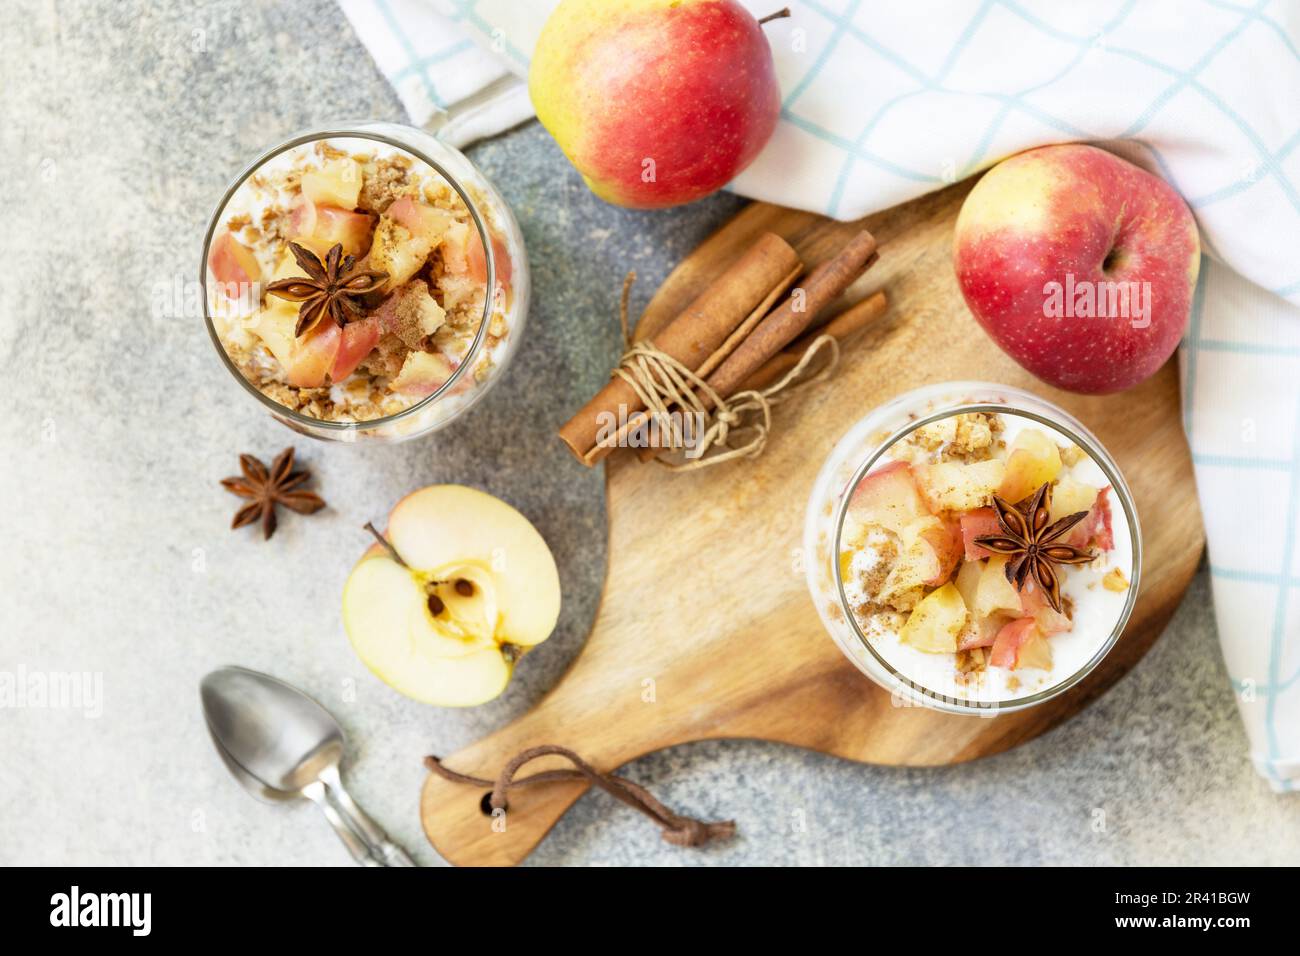 Dessert fatto in casa con yogurt, muesli, mele al caramello e cannella su un tavolo di pietra. Colazione sana granola, stile di vita sano Foto Stock